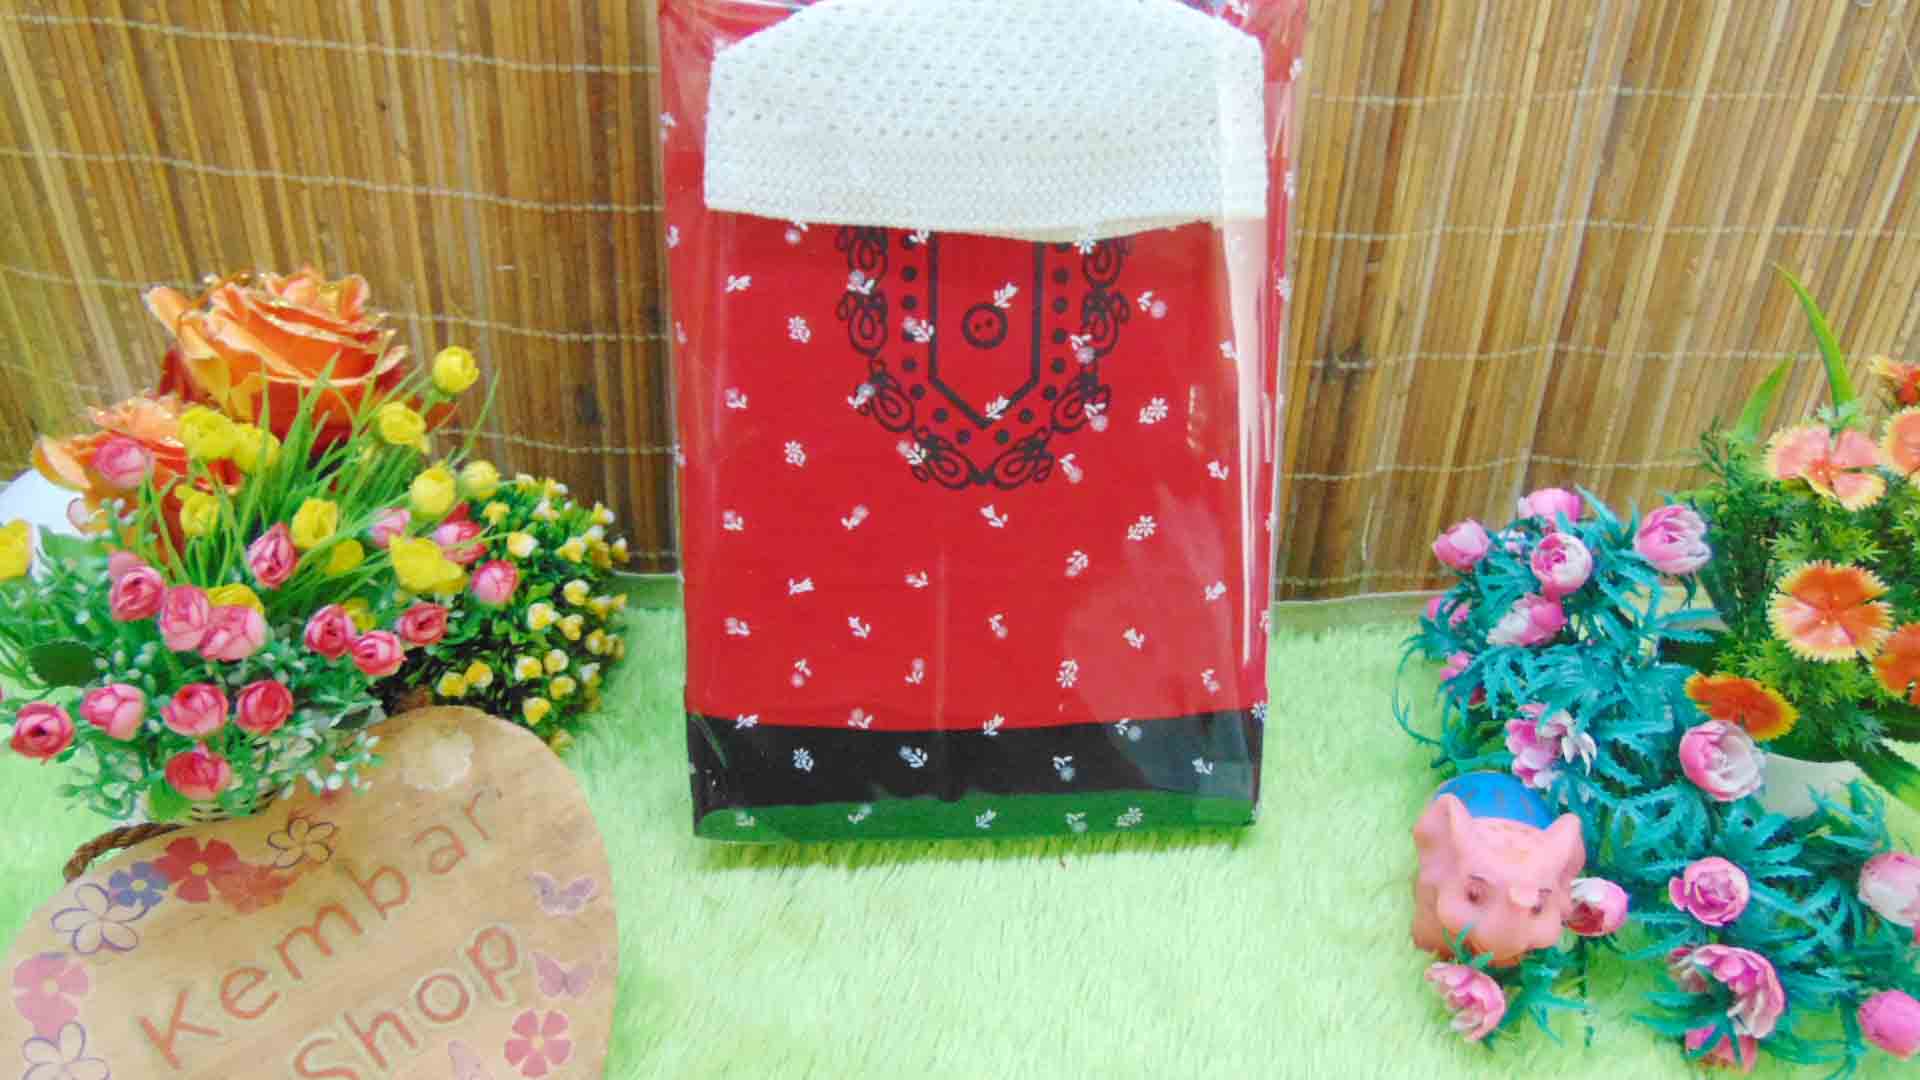 FREE KARTU UCAPAN paket kado lahiran bayi baby gift set box Romper bayi muslim Plus peci Aneka Warna (2)